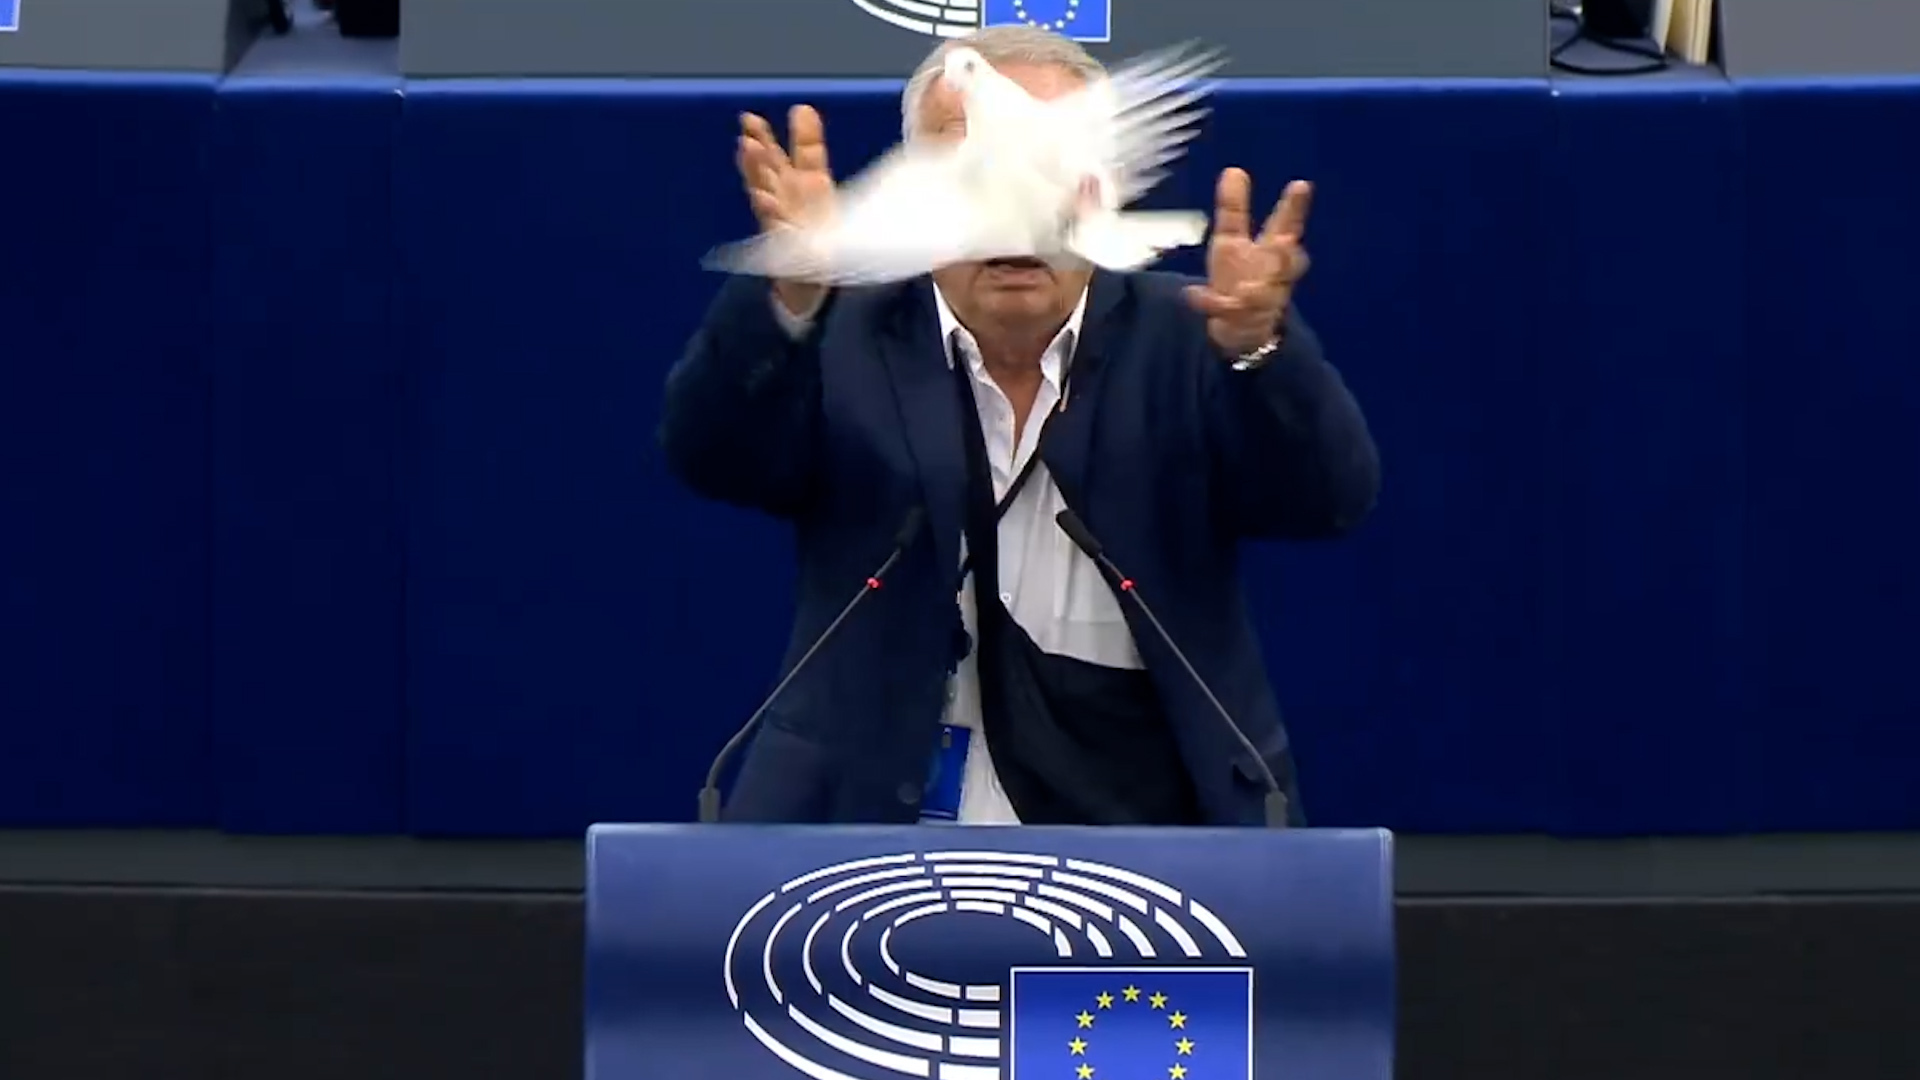 L’eurodéputé Slovaque Miroslav Radacovsky du parti d'extrême droite Slovak Patriot, a sorti une colombe de sa sacoche en plein discours au Parlement européen ce mercredi 24 avril avant de la libérer